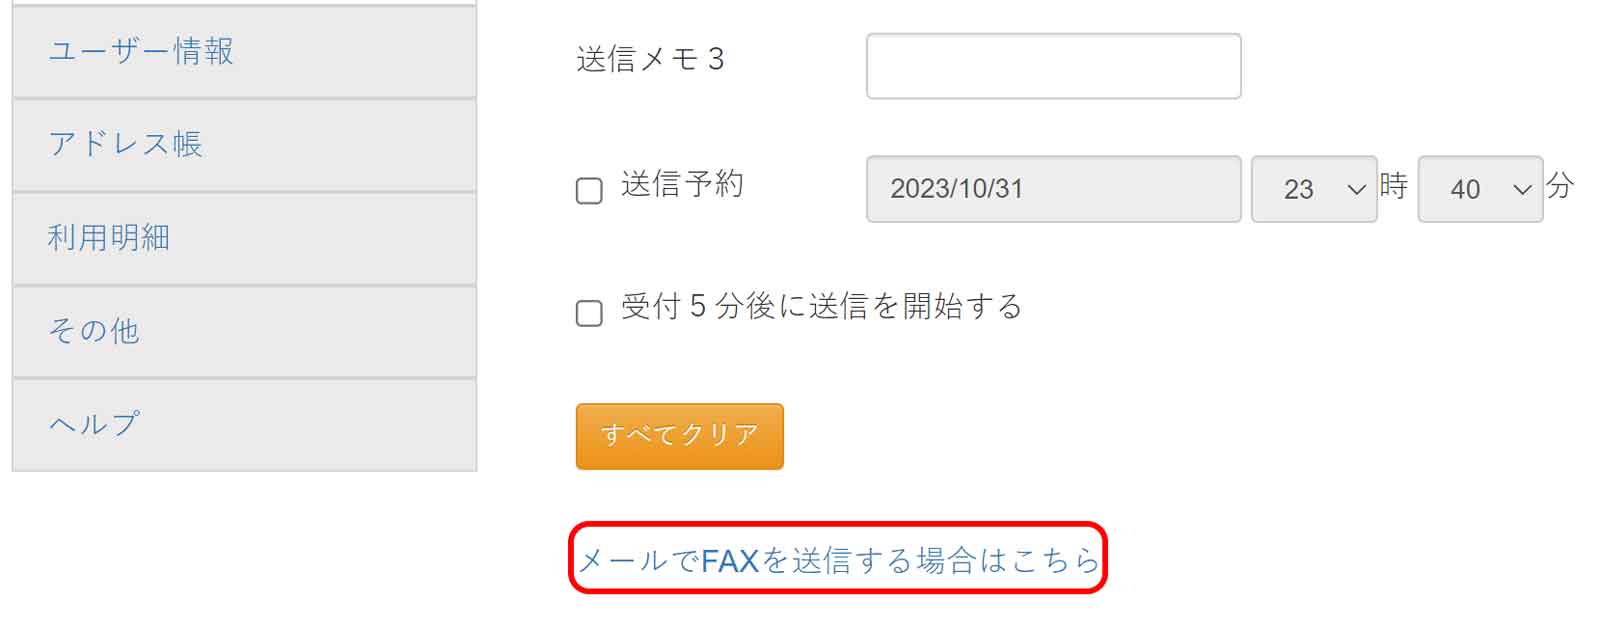 送信BOX内の「新規送信」のメールでFAXを送信する方はこちら